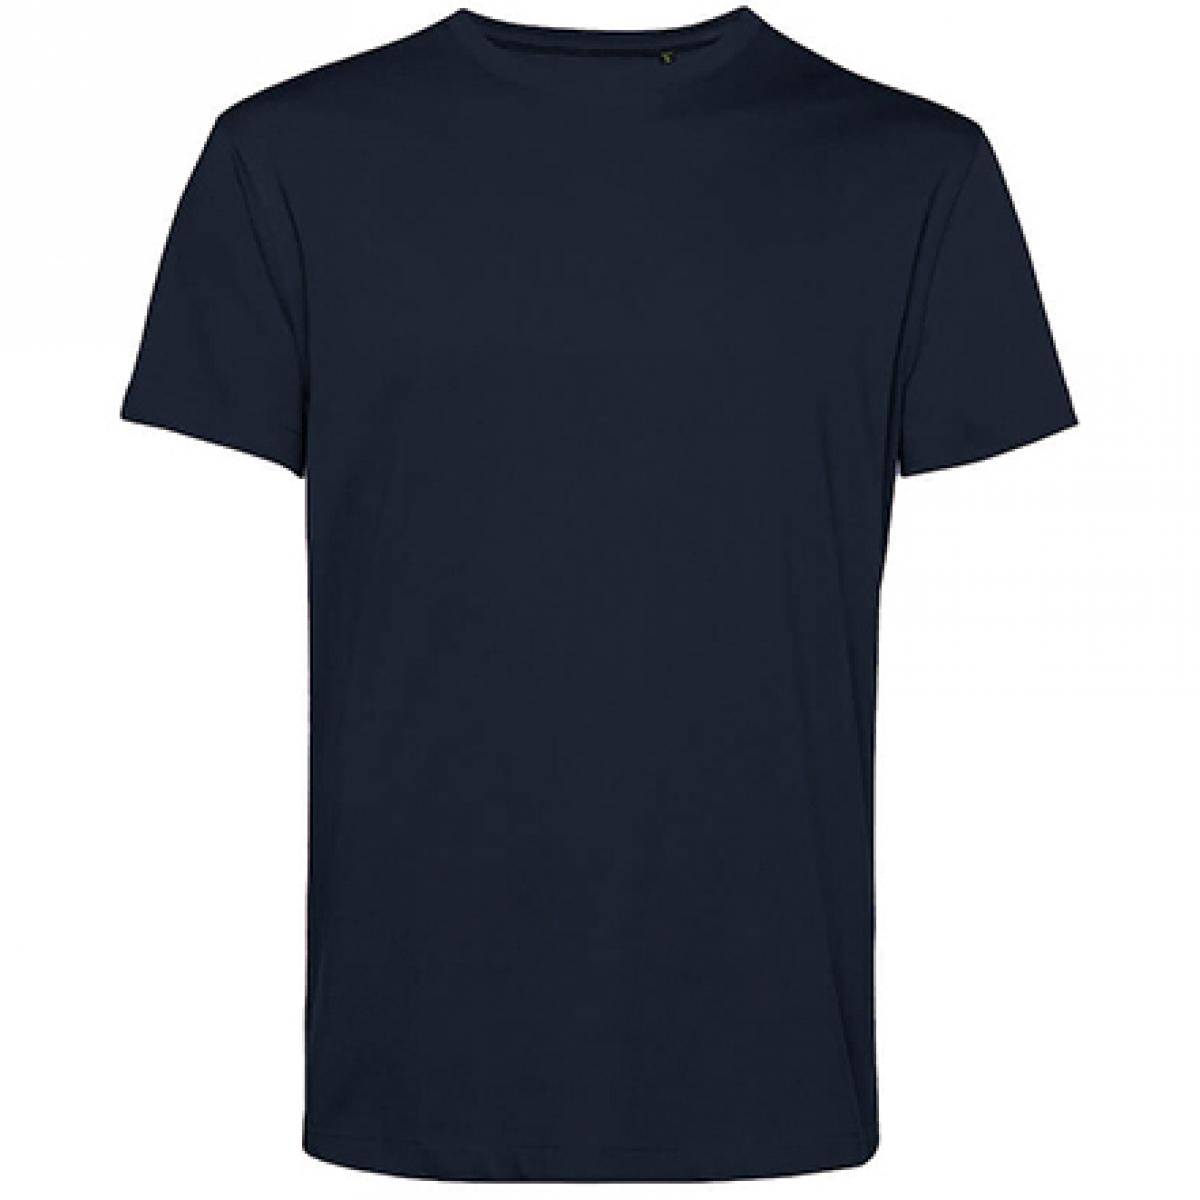 Hersteller: B&C Herstellernummer: TU01B Artikelbezeichnung: #Organic E150 T-Shirt - 100 % sanforisierte Bio-Baumwolle Farbe: Navy